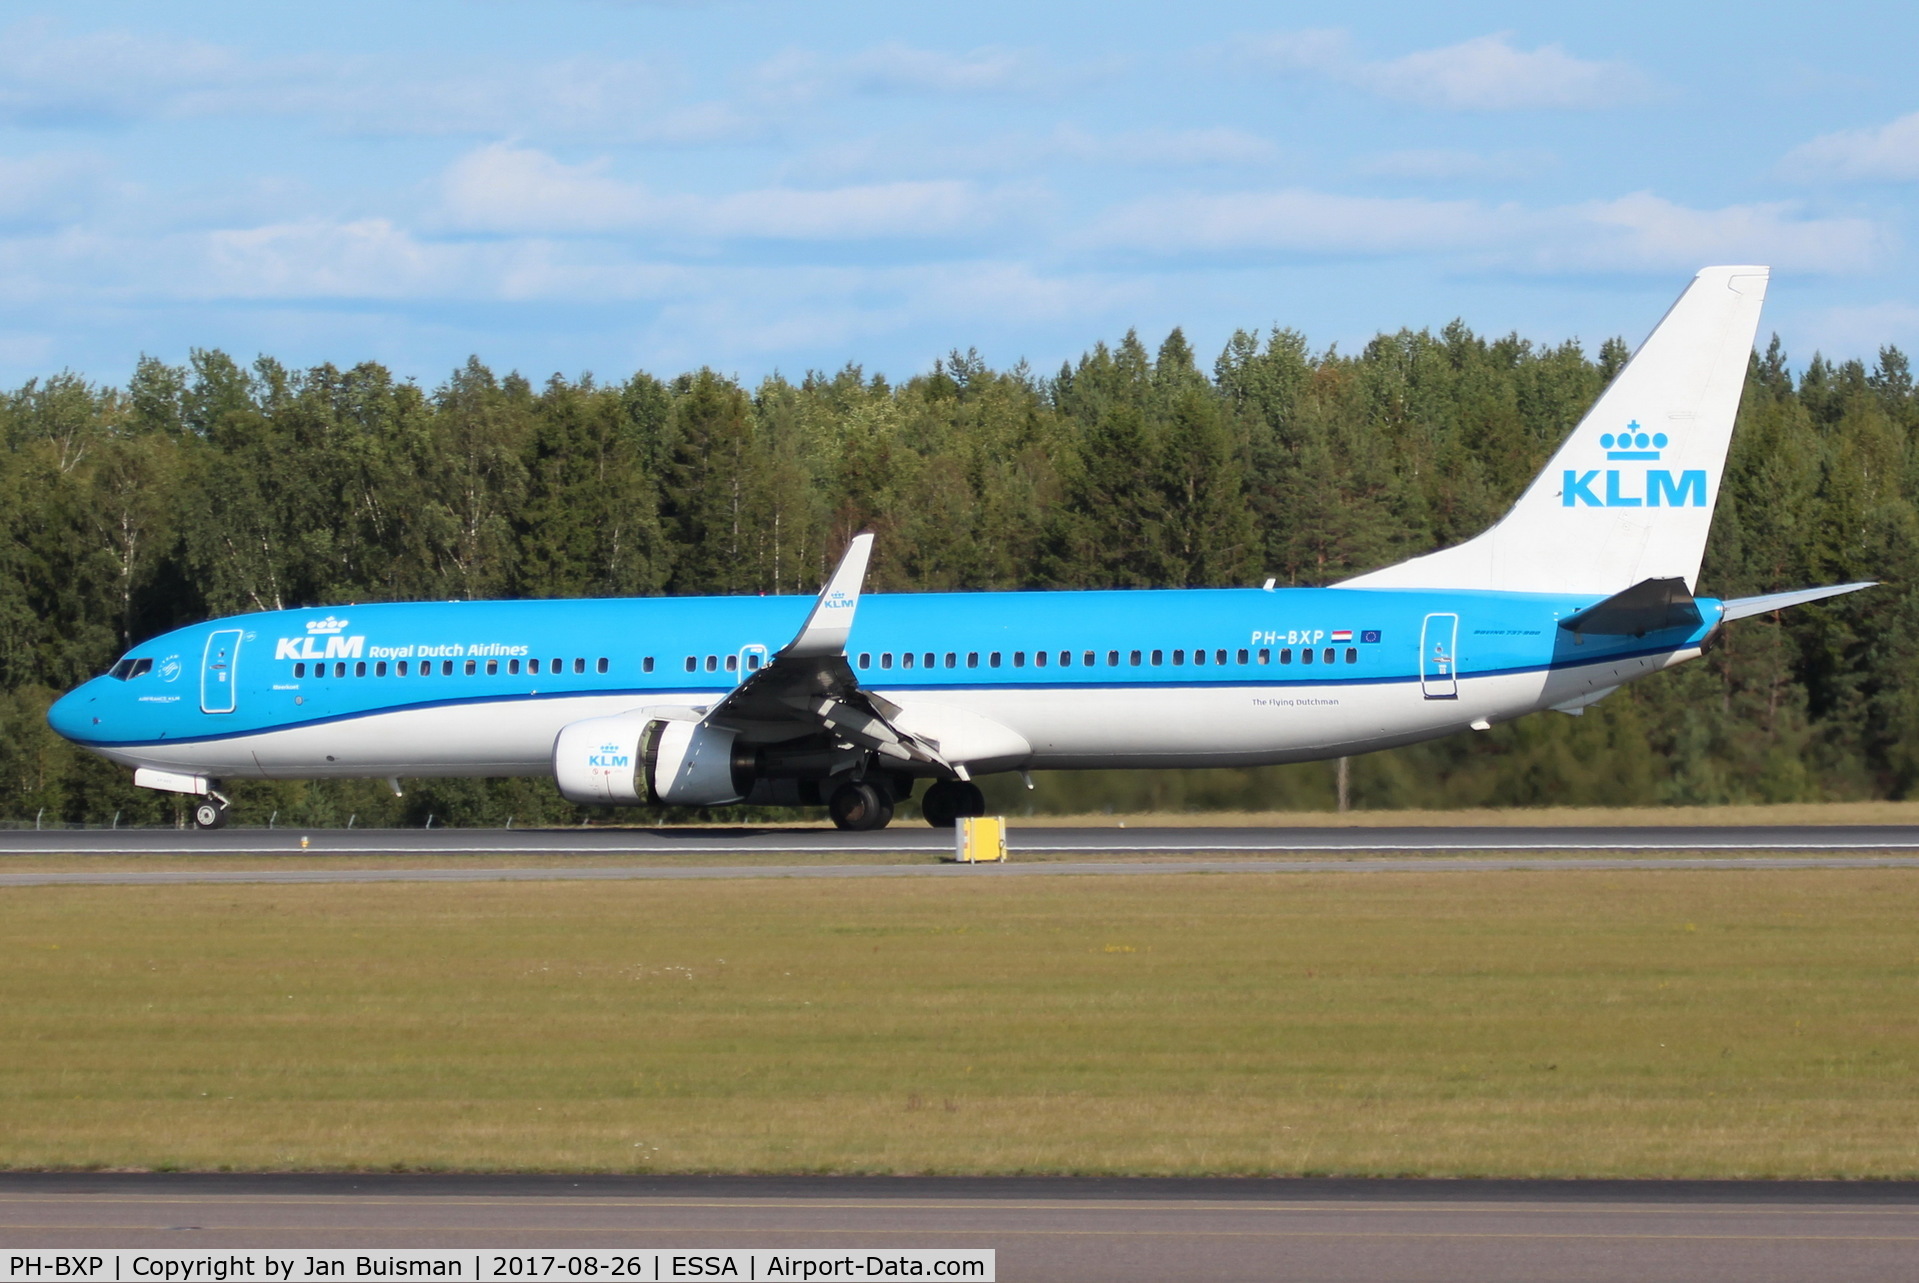 PH-BXP, 2001 Boeing 737-9K2 C/N 29600, KLM